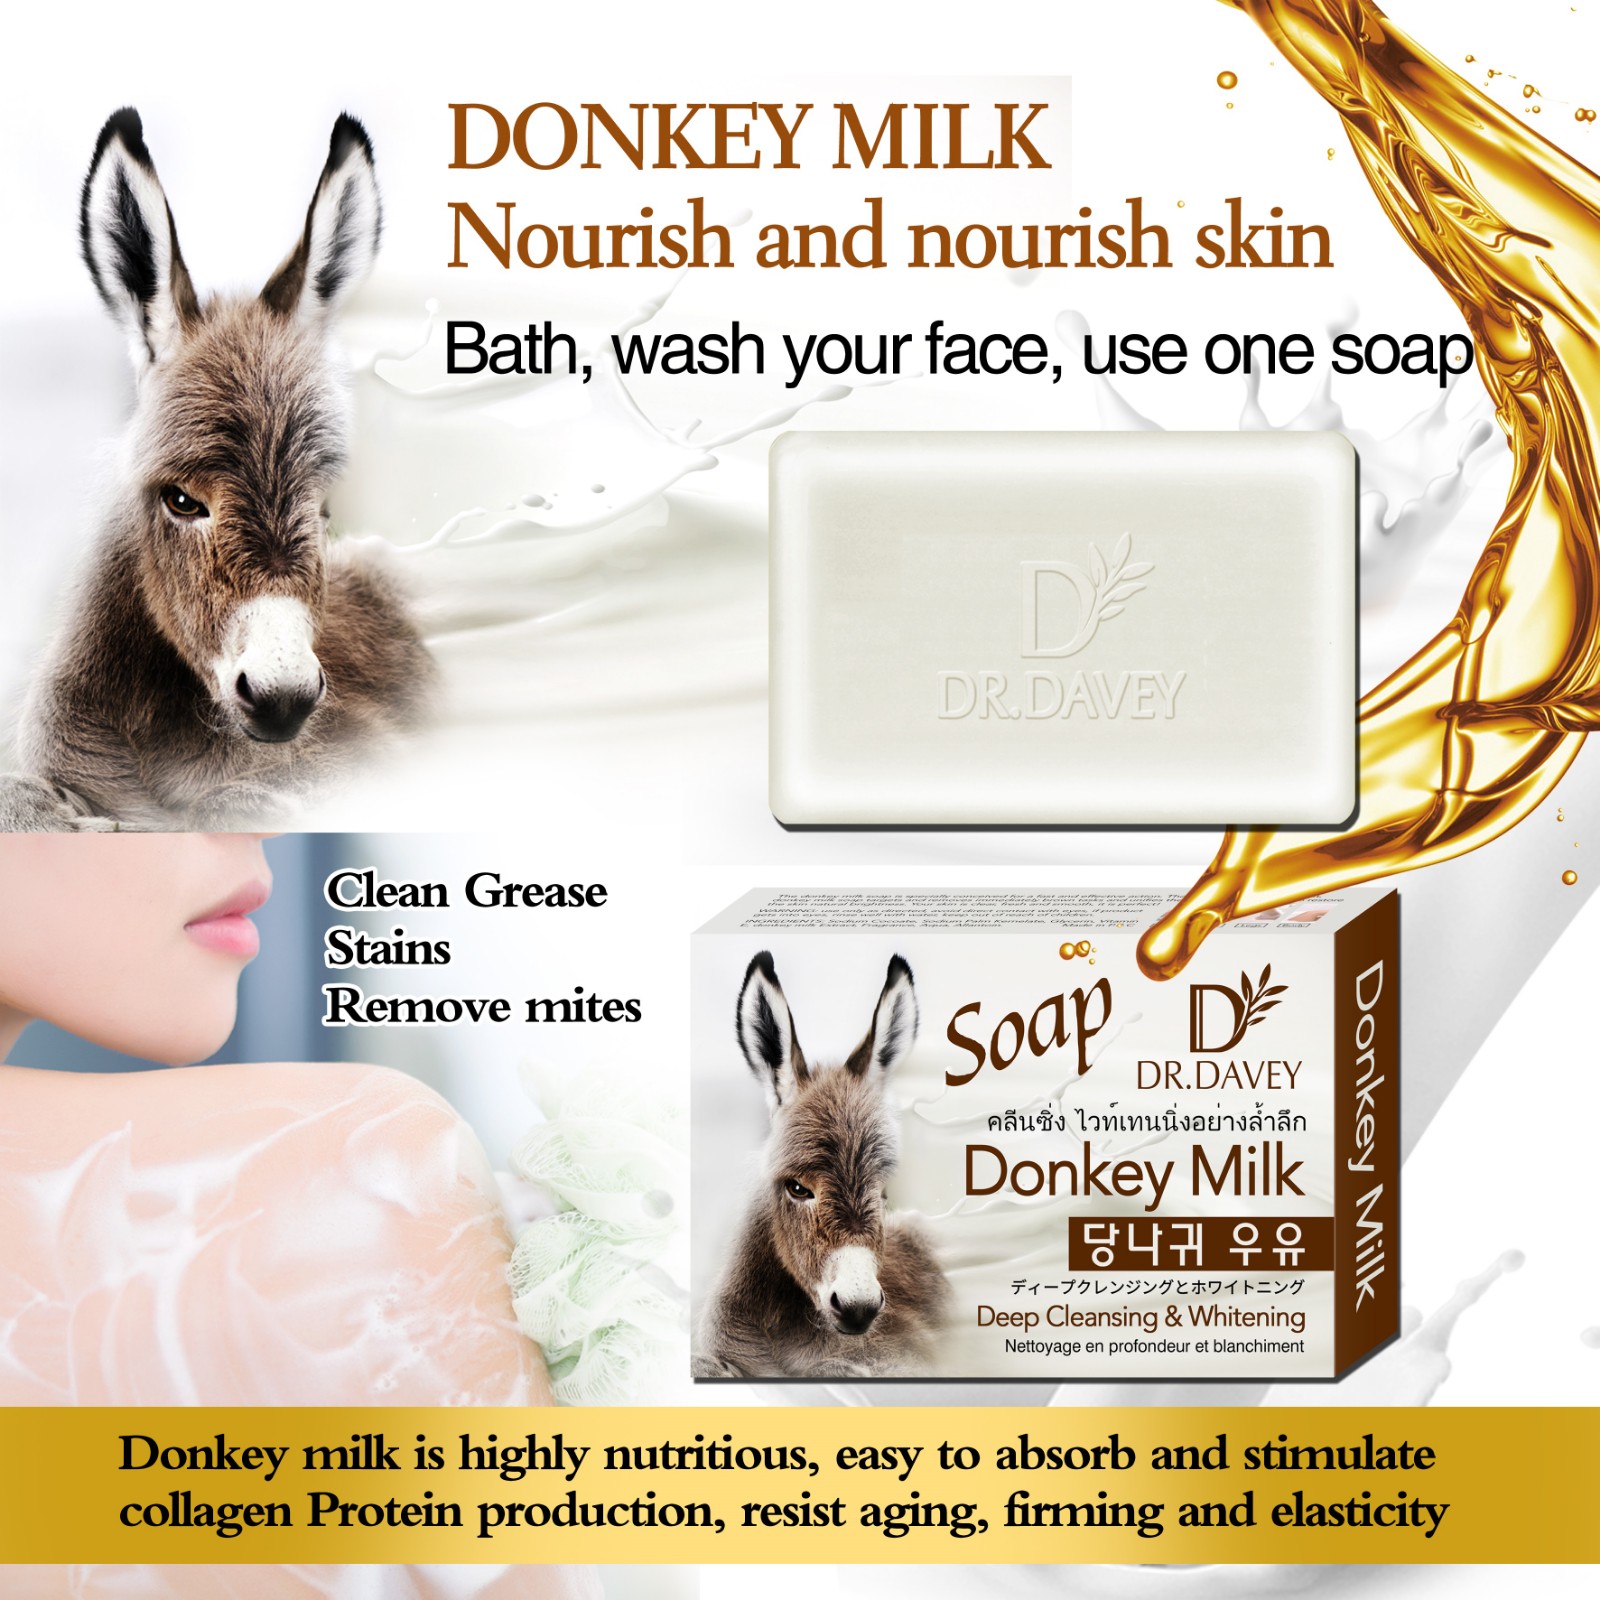 Donkey milk soap